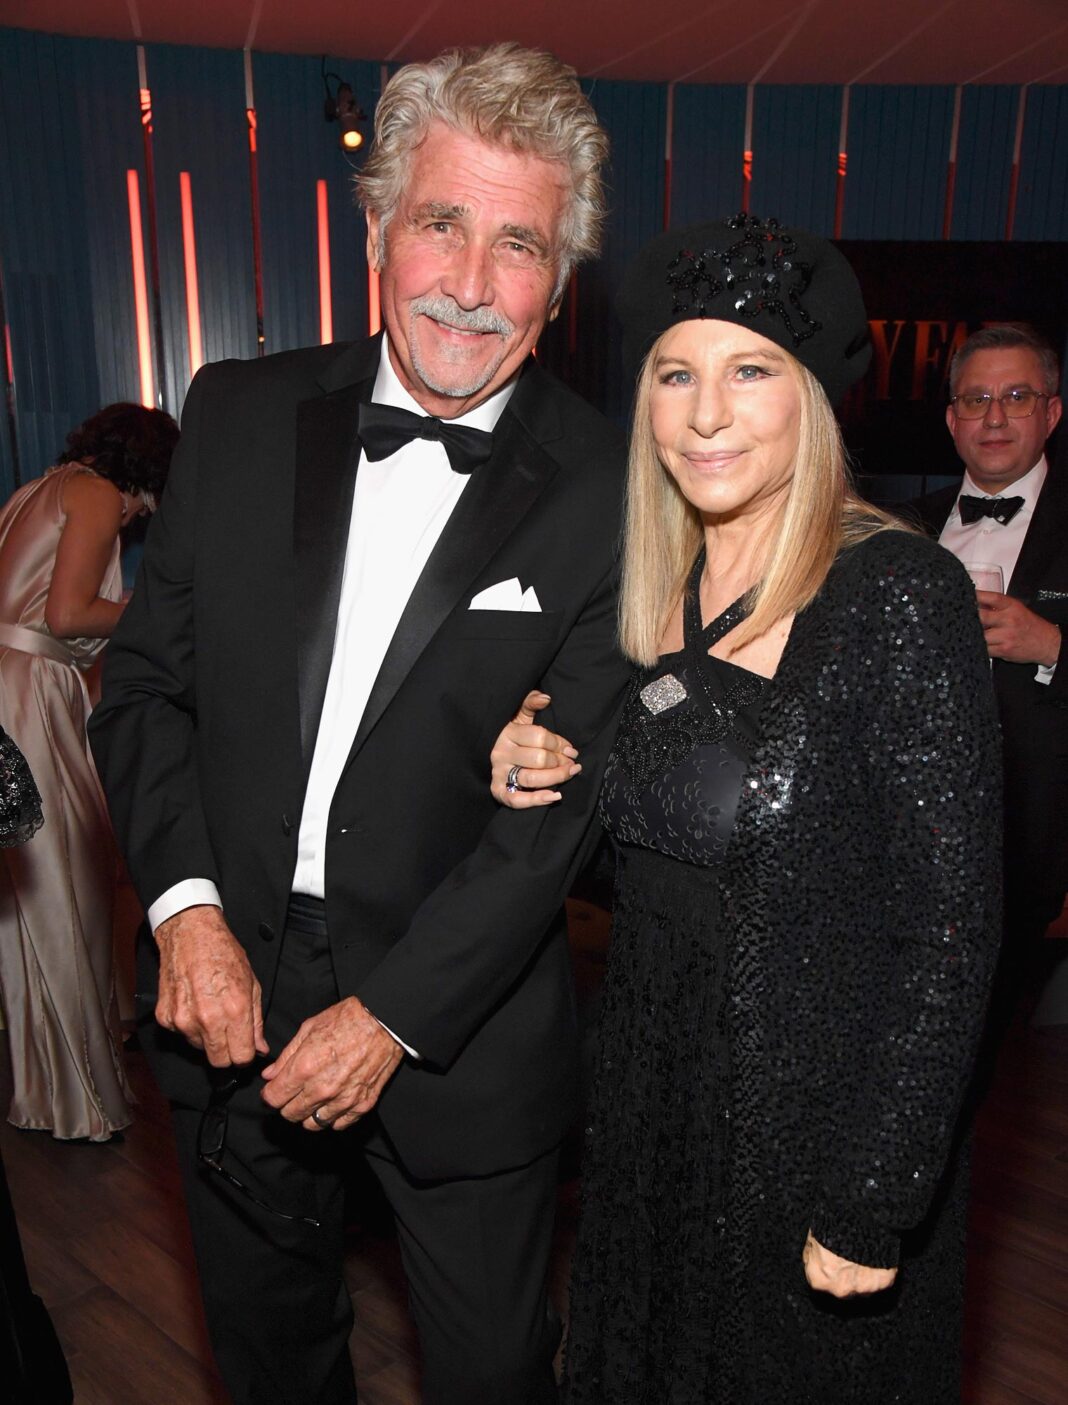 Barbra Streisand and Husband James Brolin’s Relationship Timeline